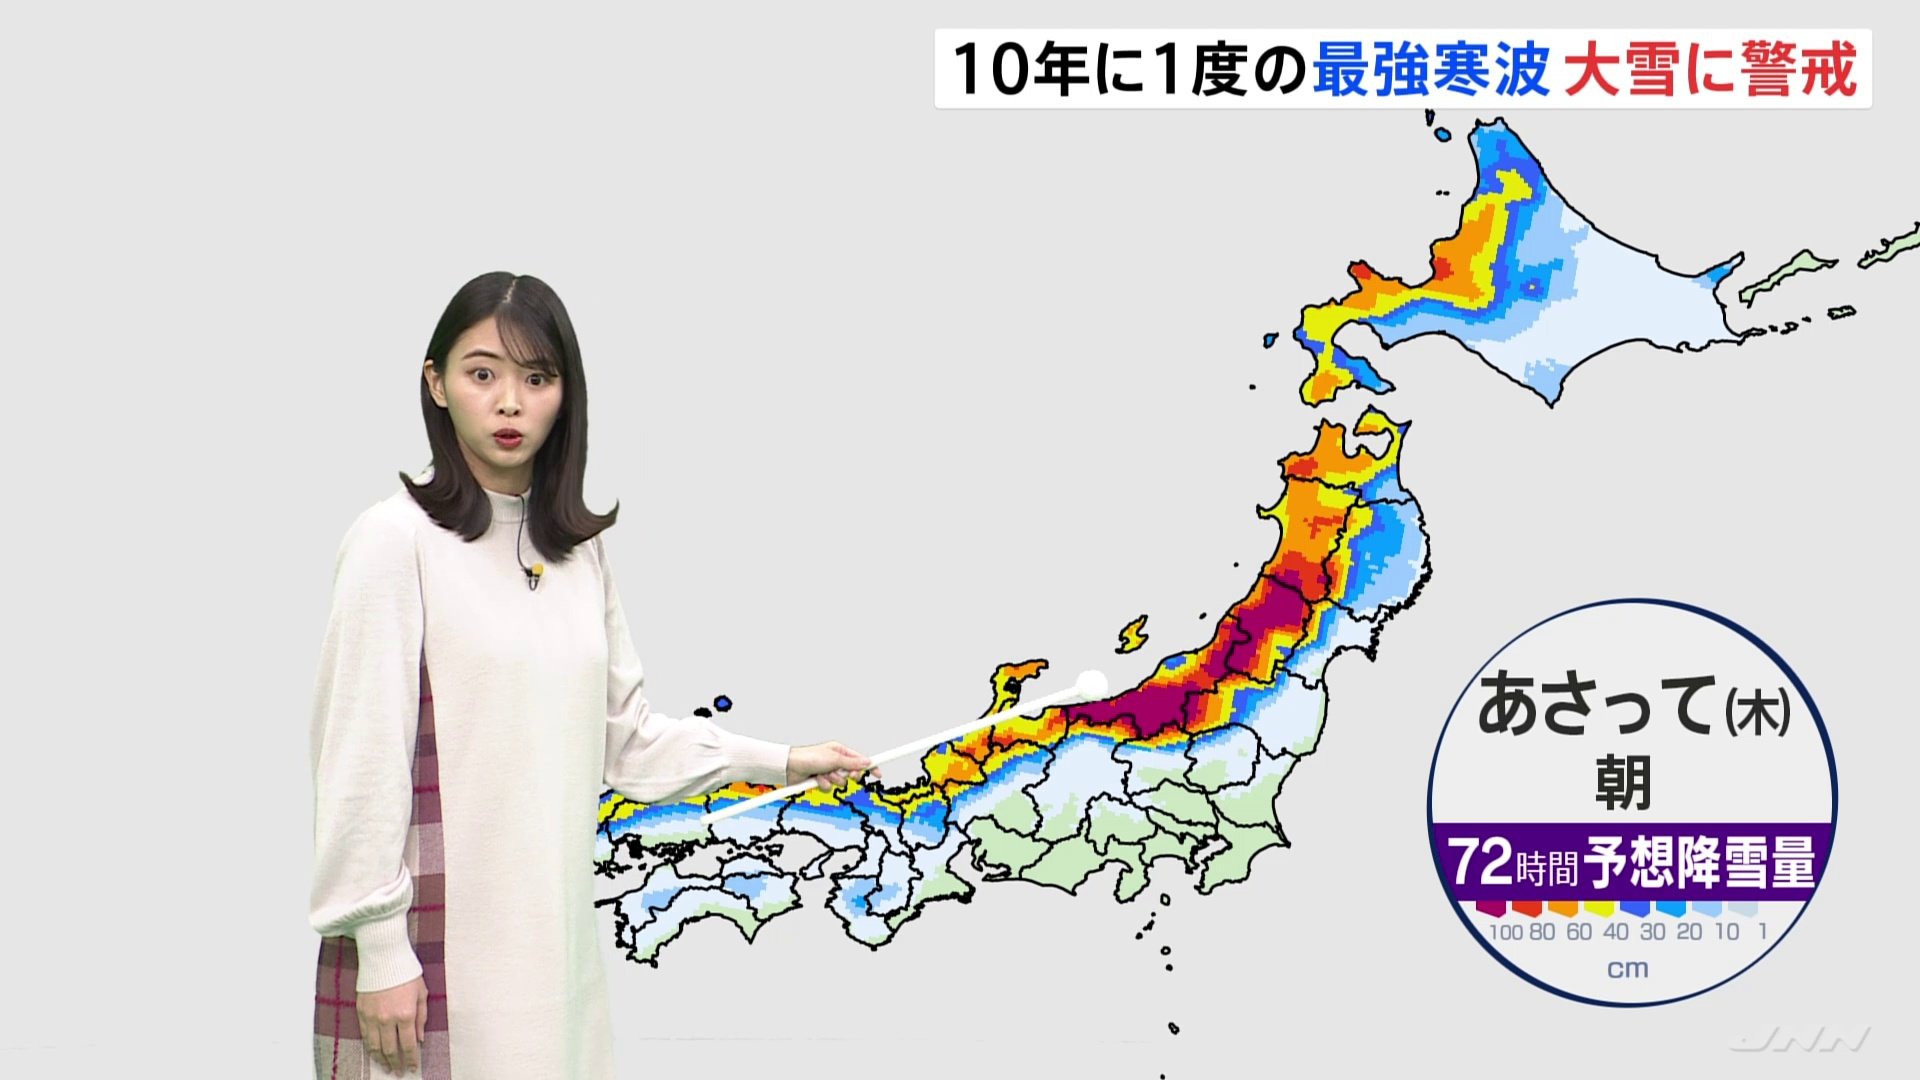 “最強寒波”日本海側は軒並み大雪に　山形・新潟では1メートル超え地域も　大阪・鹿児島などの太平洋側の平野部も積雪可能性　気象予報士解説